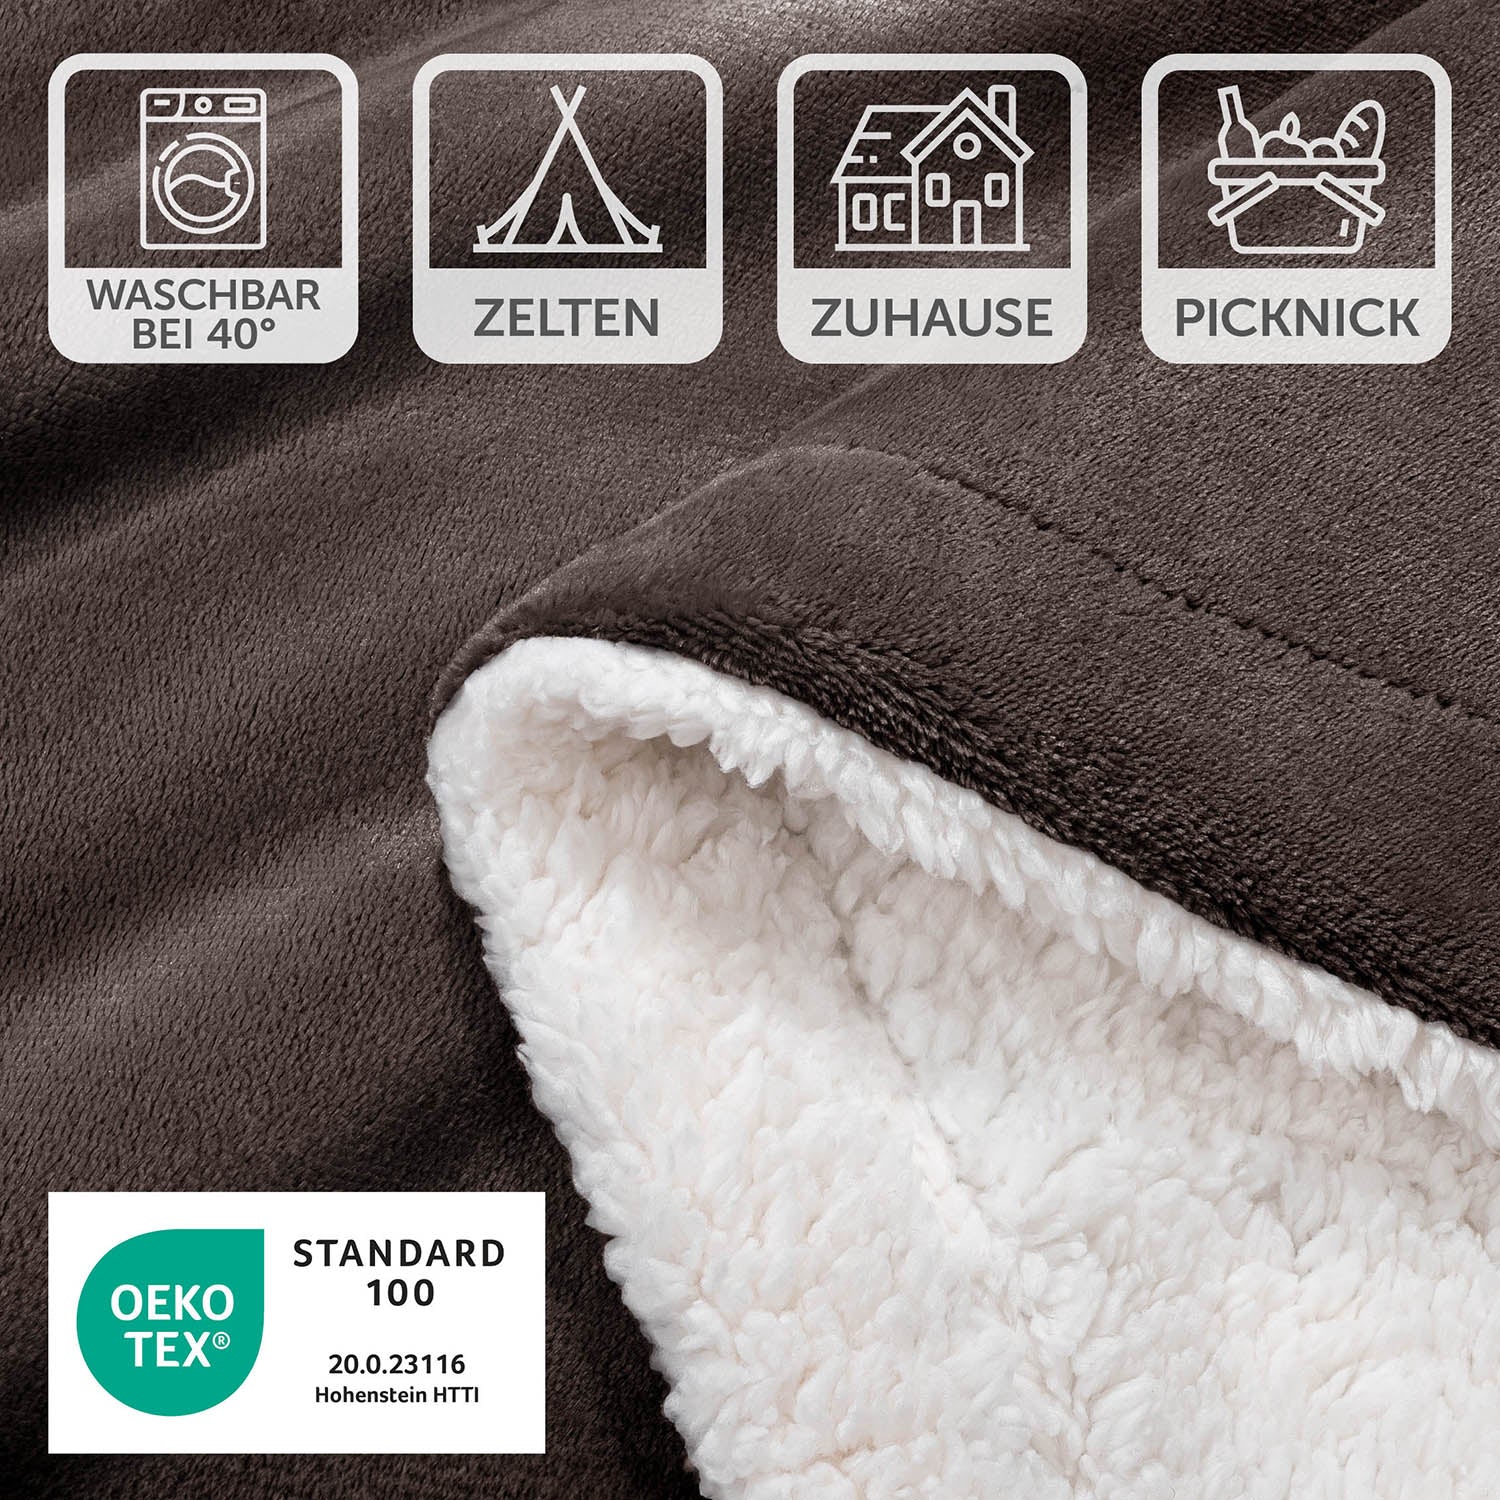 Detailansicht einer braunen Decke mit Pflegesymbolen und OEKO-TEX Standard 100 Siegel, waschbar bei 40 Grad, geeignet für Zelten, Zuhause und Picknick.